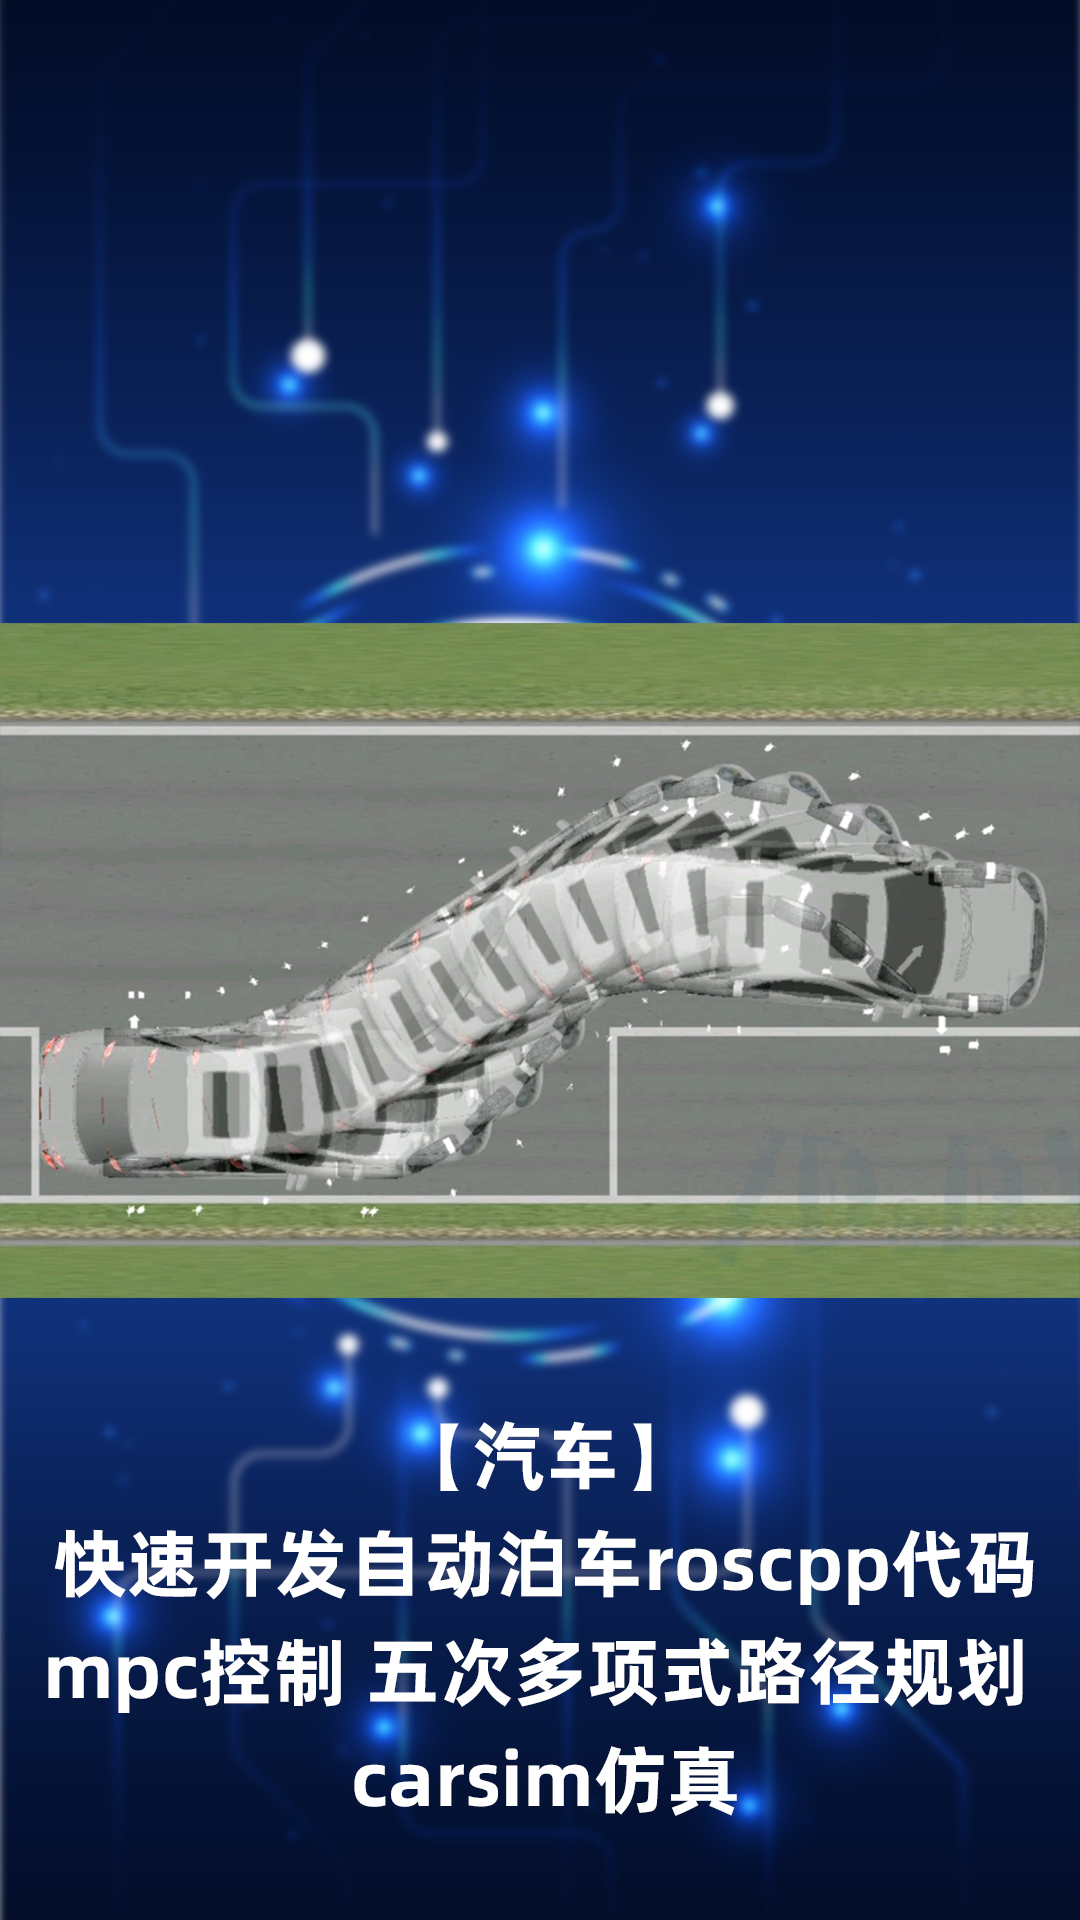 【汽车】快速开发自动泊车roscpp代码 mpc控制 五次多项式路径规划 carsim仿真